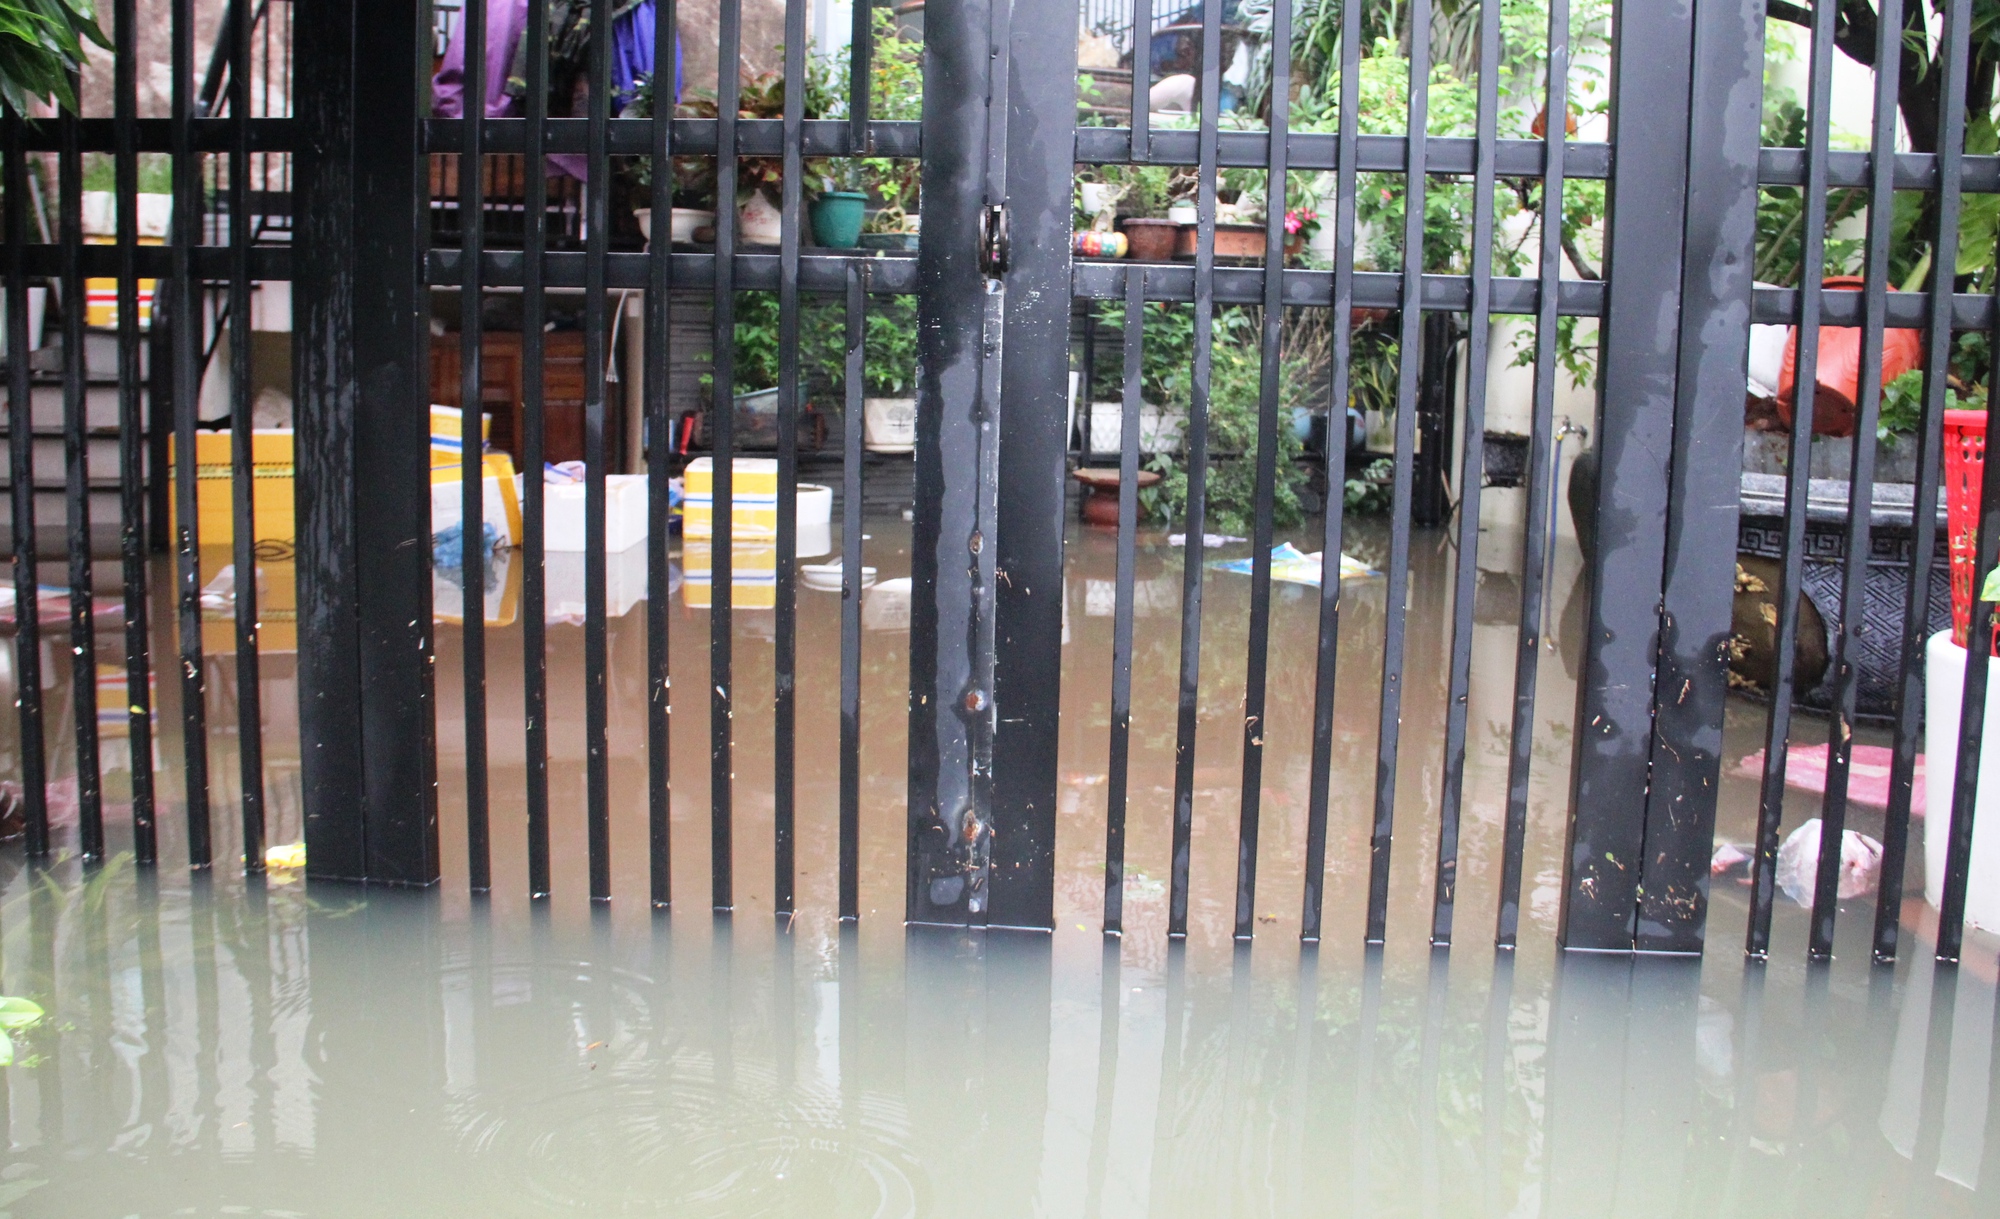 Quảng Nam: Nhiều nơi chìm trong biển nước, dân dùng ghe đi lại - Ảnh 8.